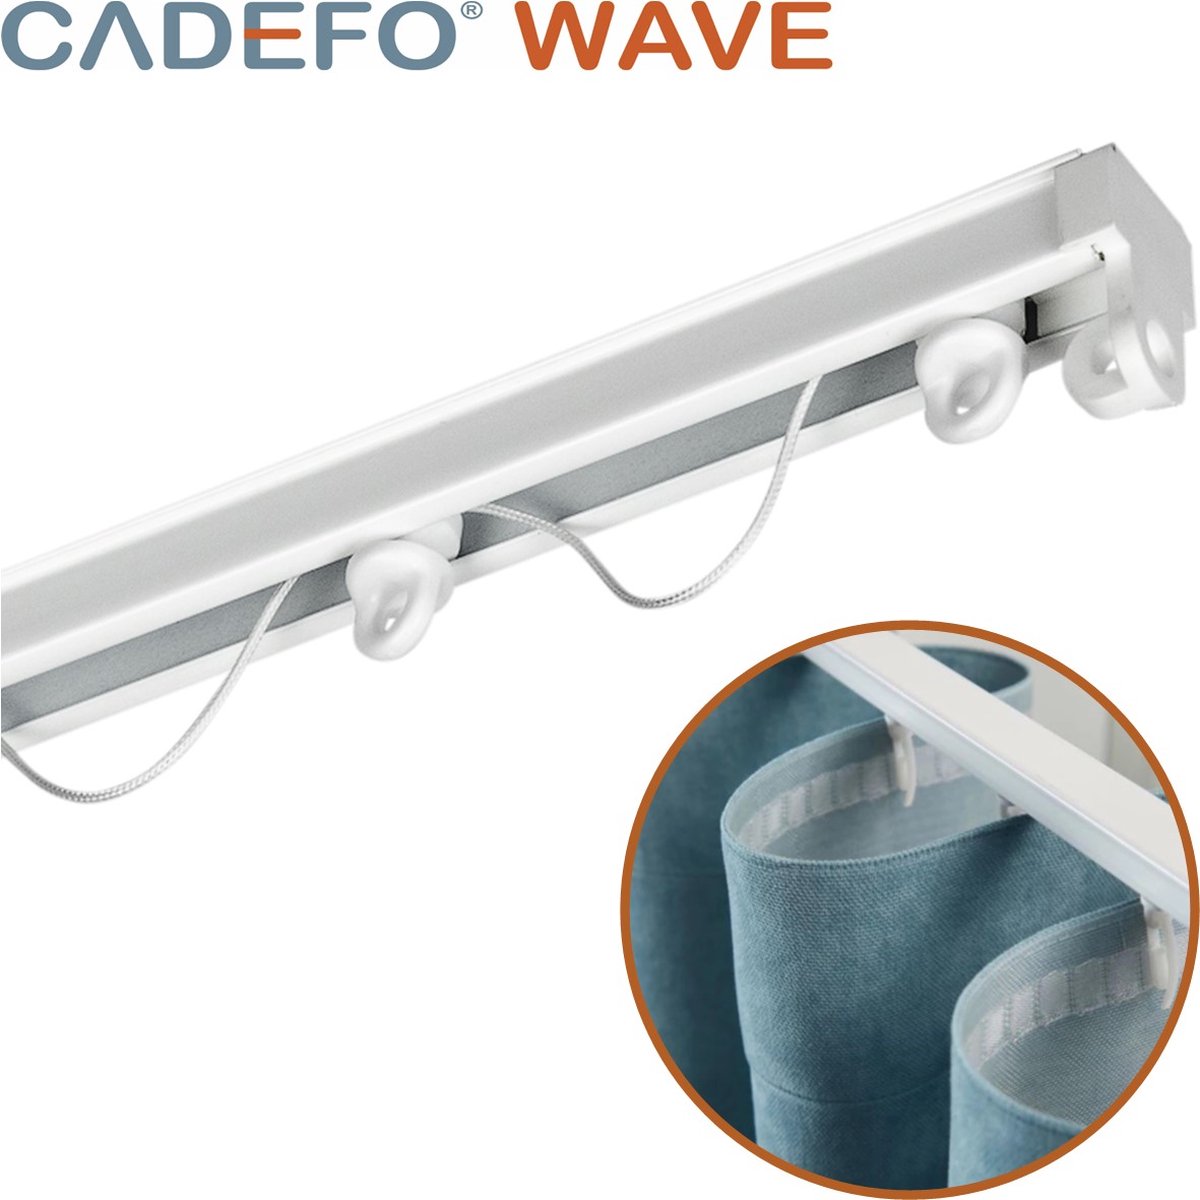 CADEFO WAVE (251 - 300 cm) Gordijnrails - Compleet op maat! - UIT 1 STUK - Leverbaar tot 6 meter - Plafondbevestiging - Lengte 281 cm